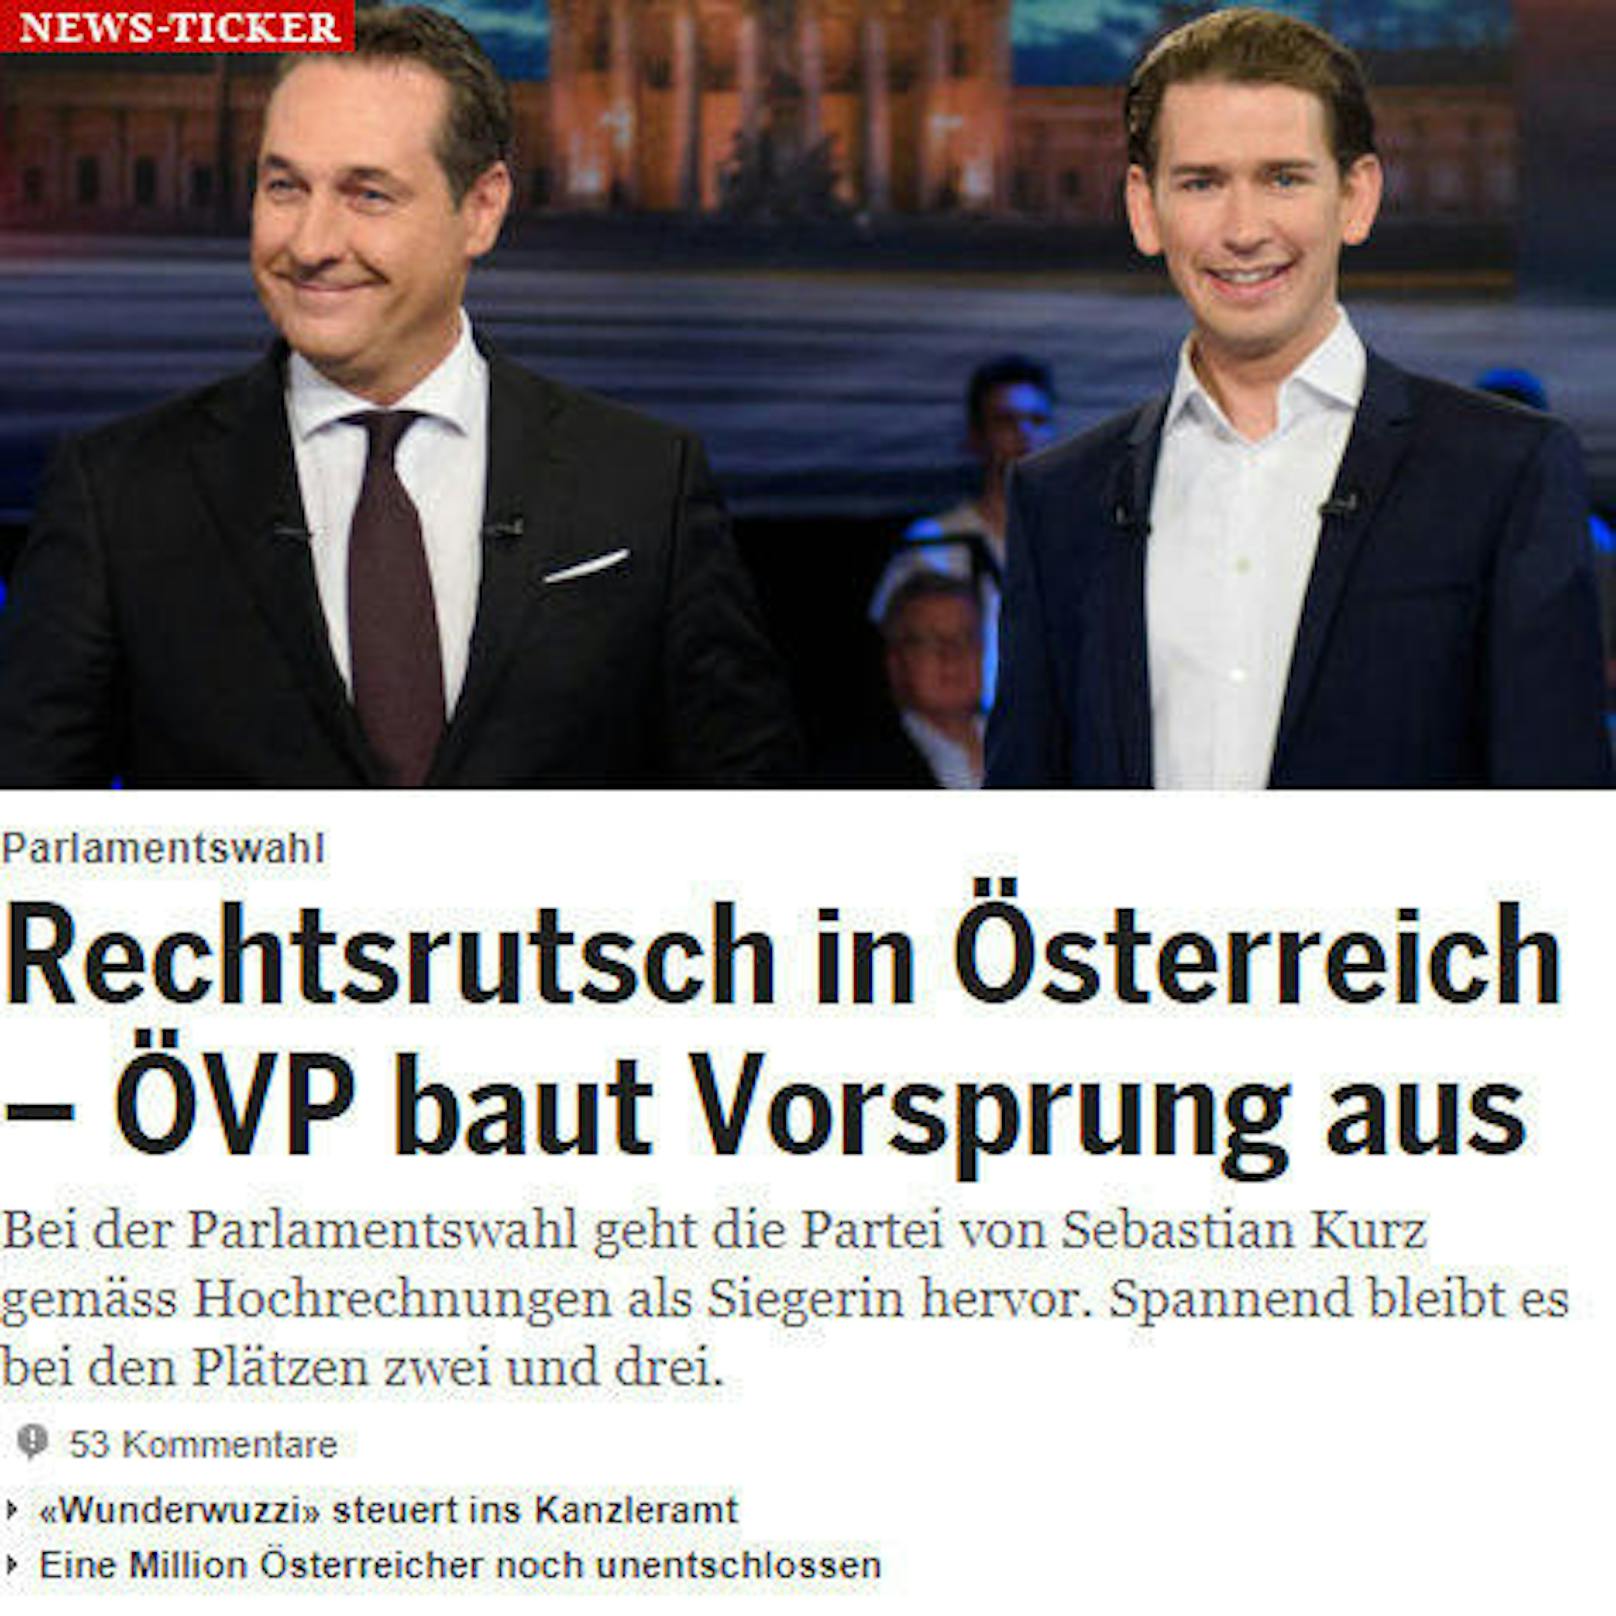 <b>20Minuten.ch</b>: "Rechtsrutsch in Österreich - ÖVP baut Vorsprung aus"